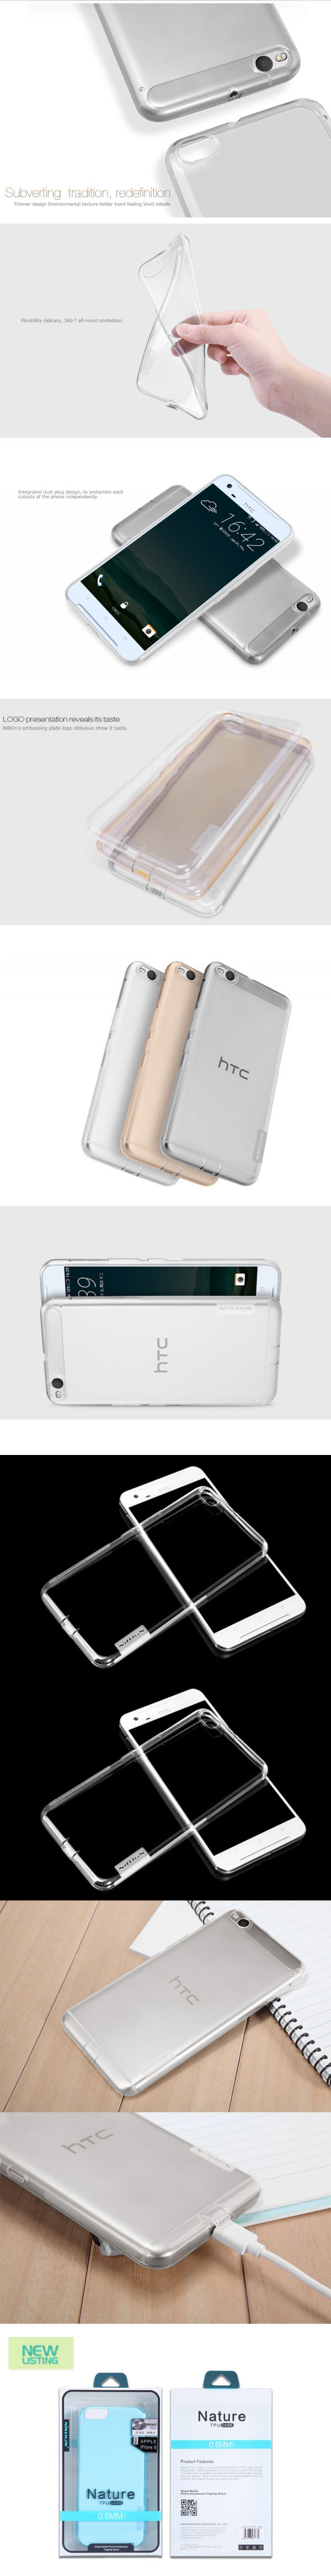 Ốp lưng HTC One X9 Nillkin TPU nhựa dẻo trong suốt 3